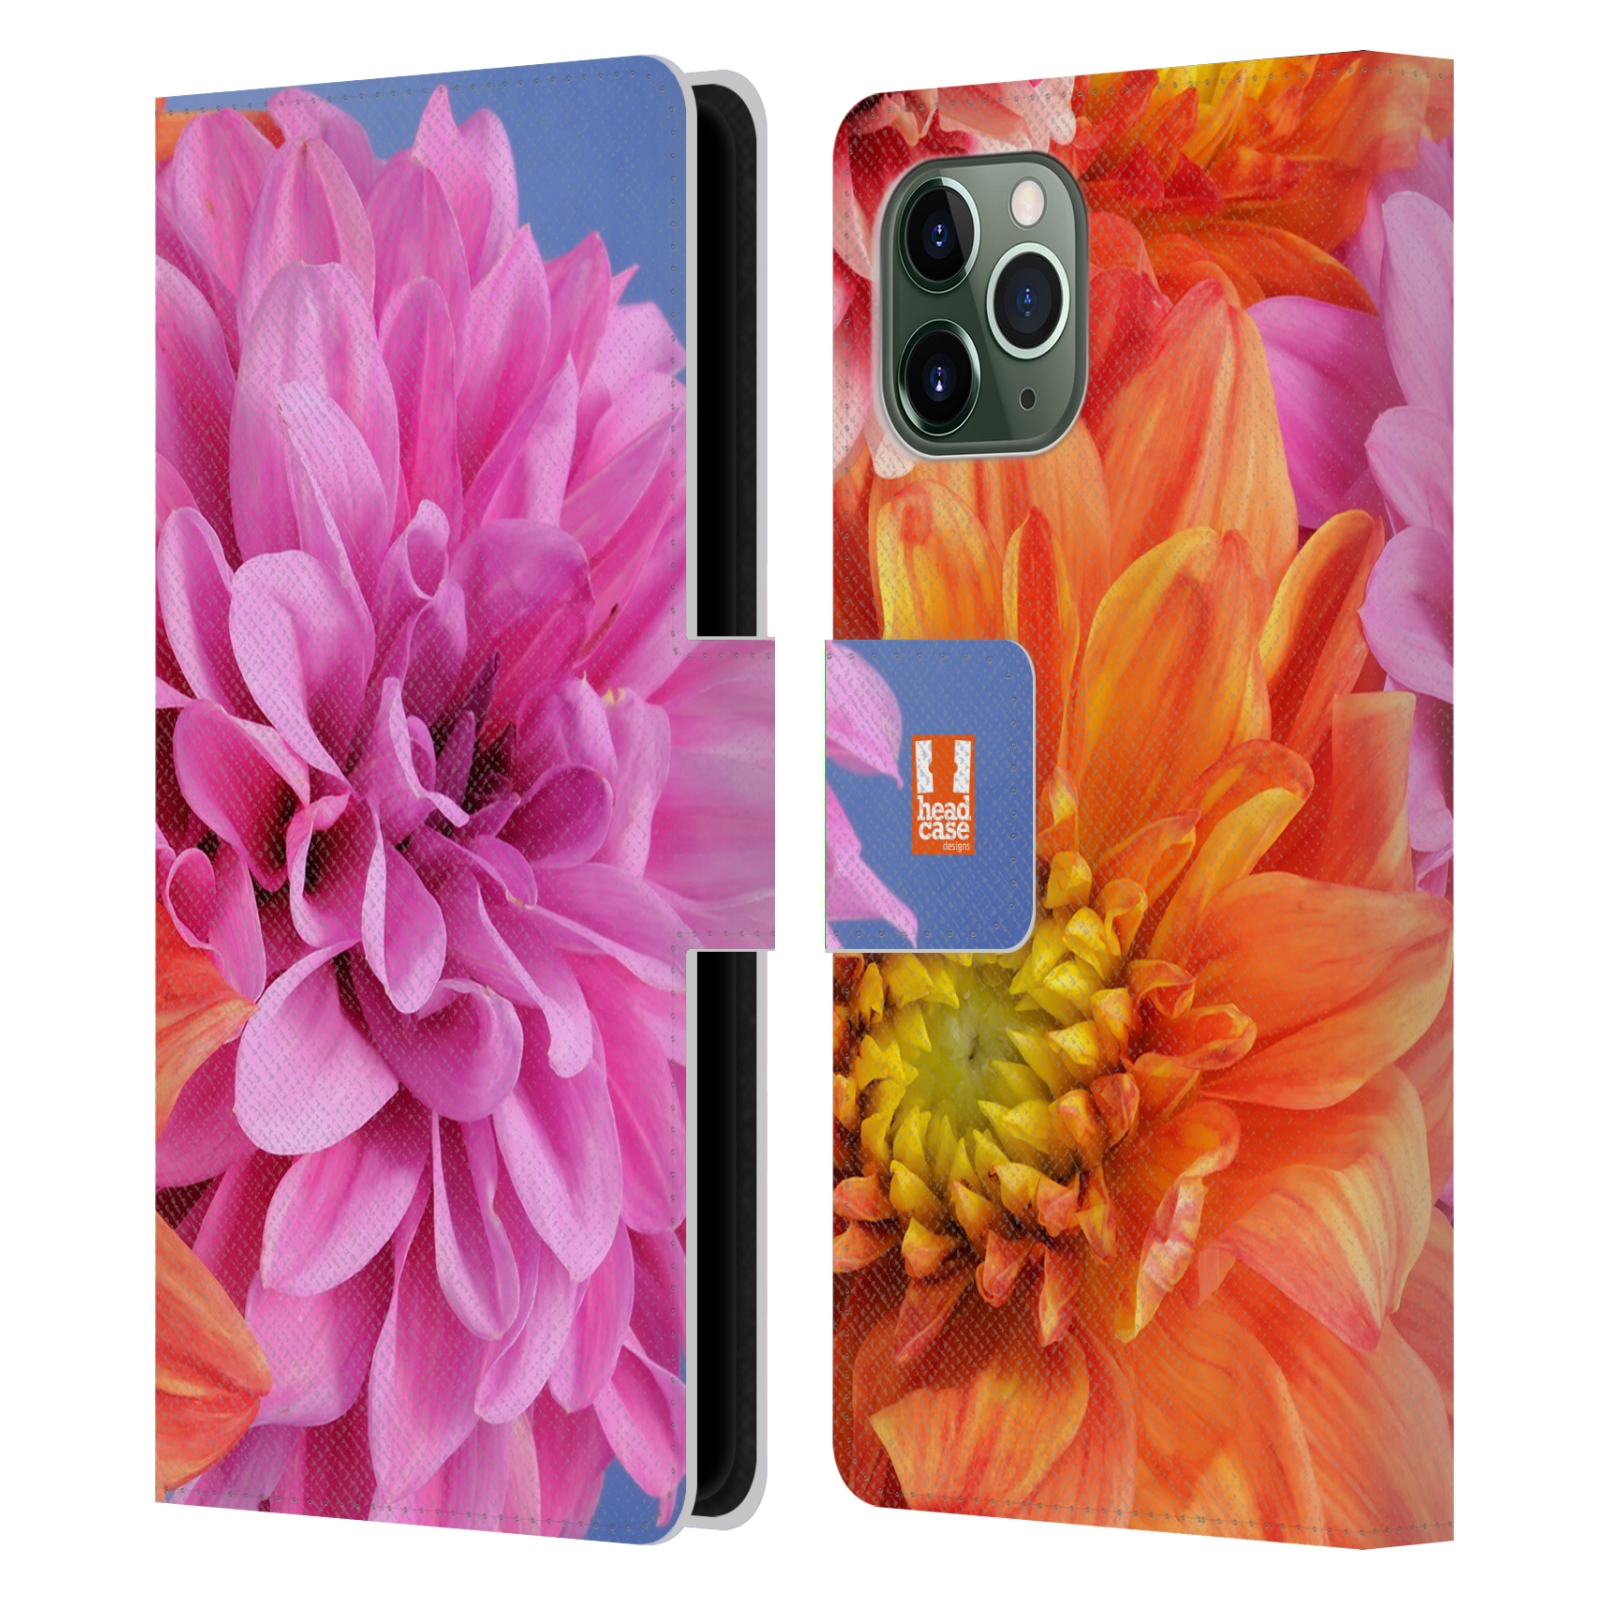 Pouzdro na mobil Apple Iphone 11 PRO květy foto Jiřinka růžová a oranžová